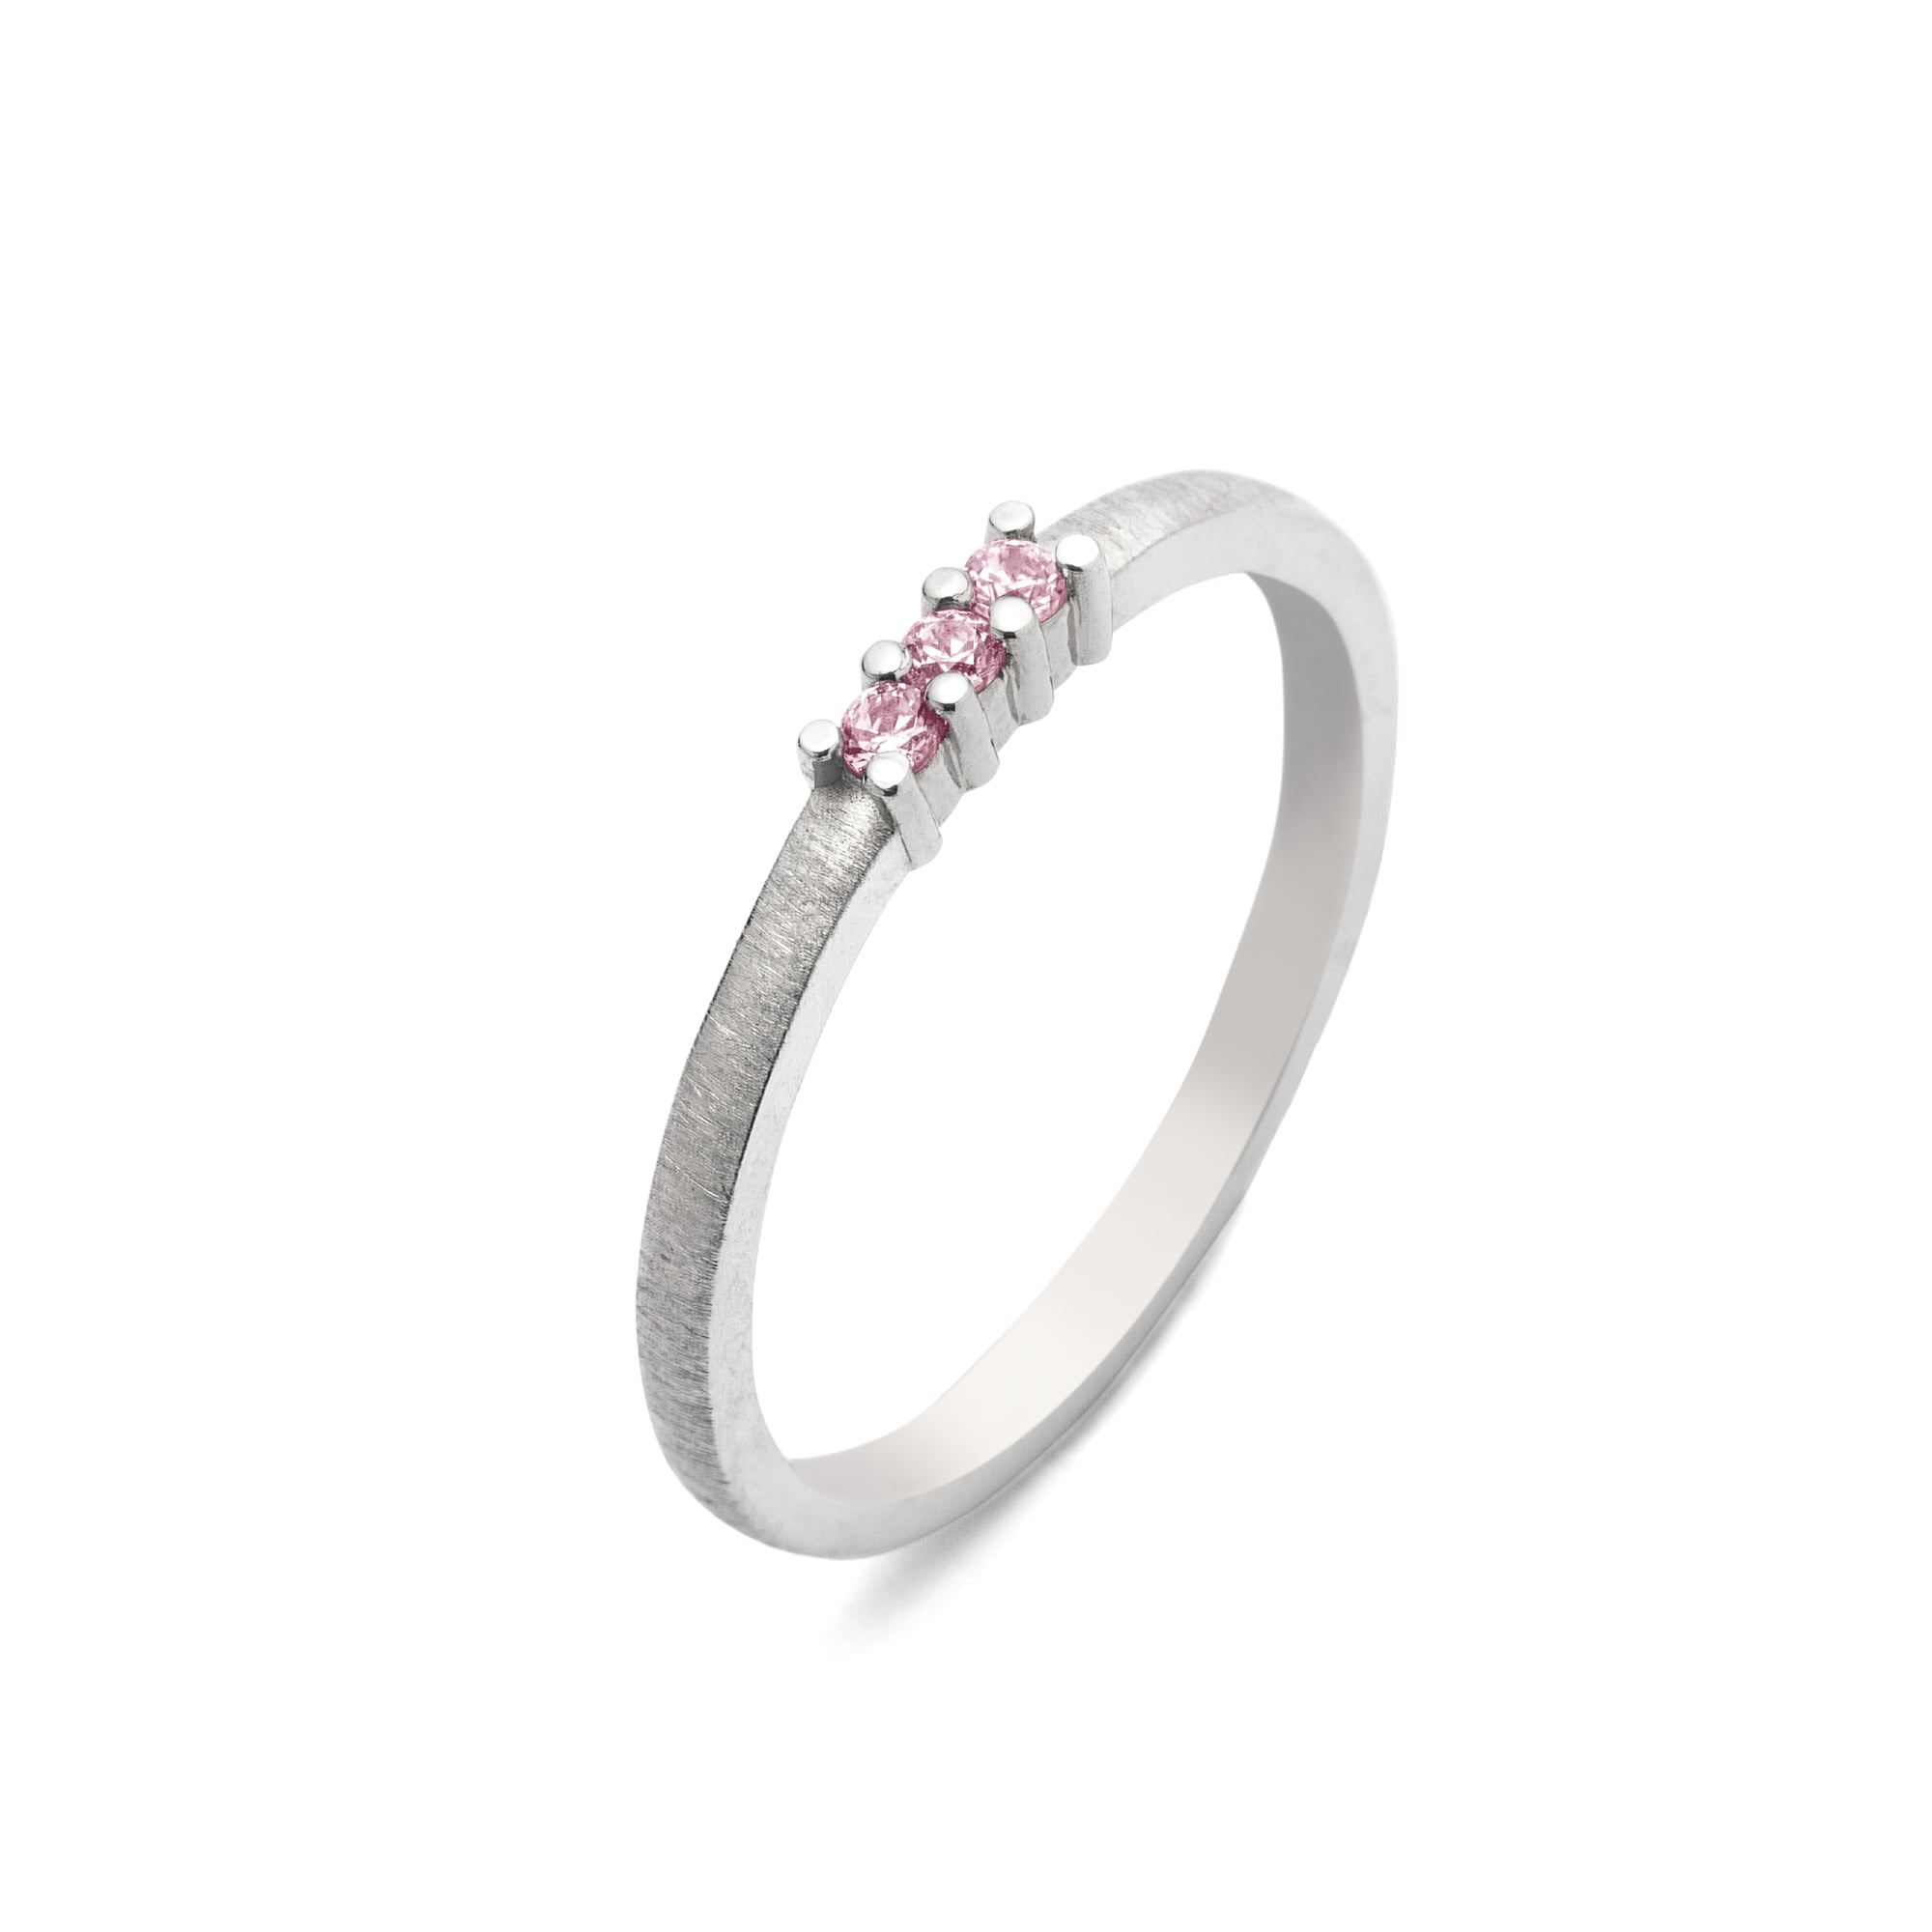 Pierścionek zaręczynowy z różowymi szafirami - białe złoto14kt - Marcin Czop Autorska Pracownia Biżuterii